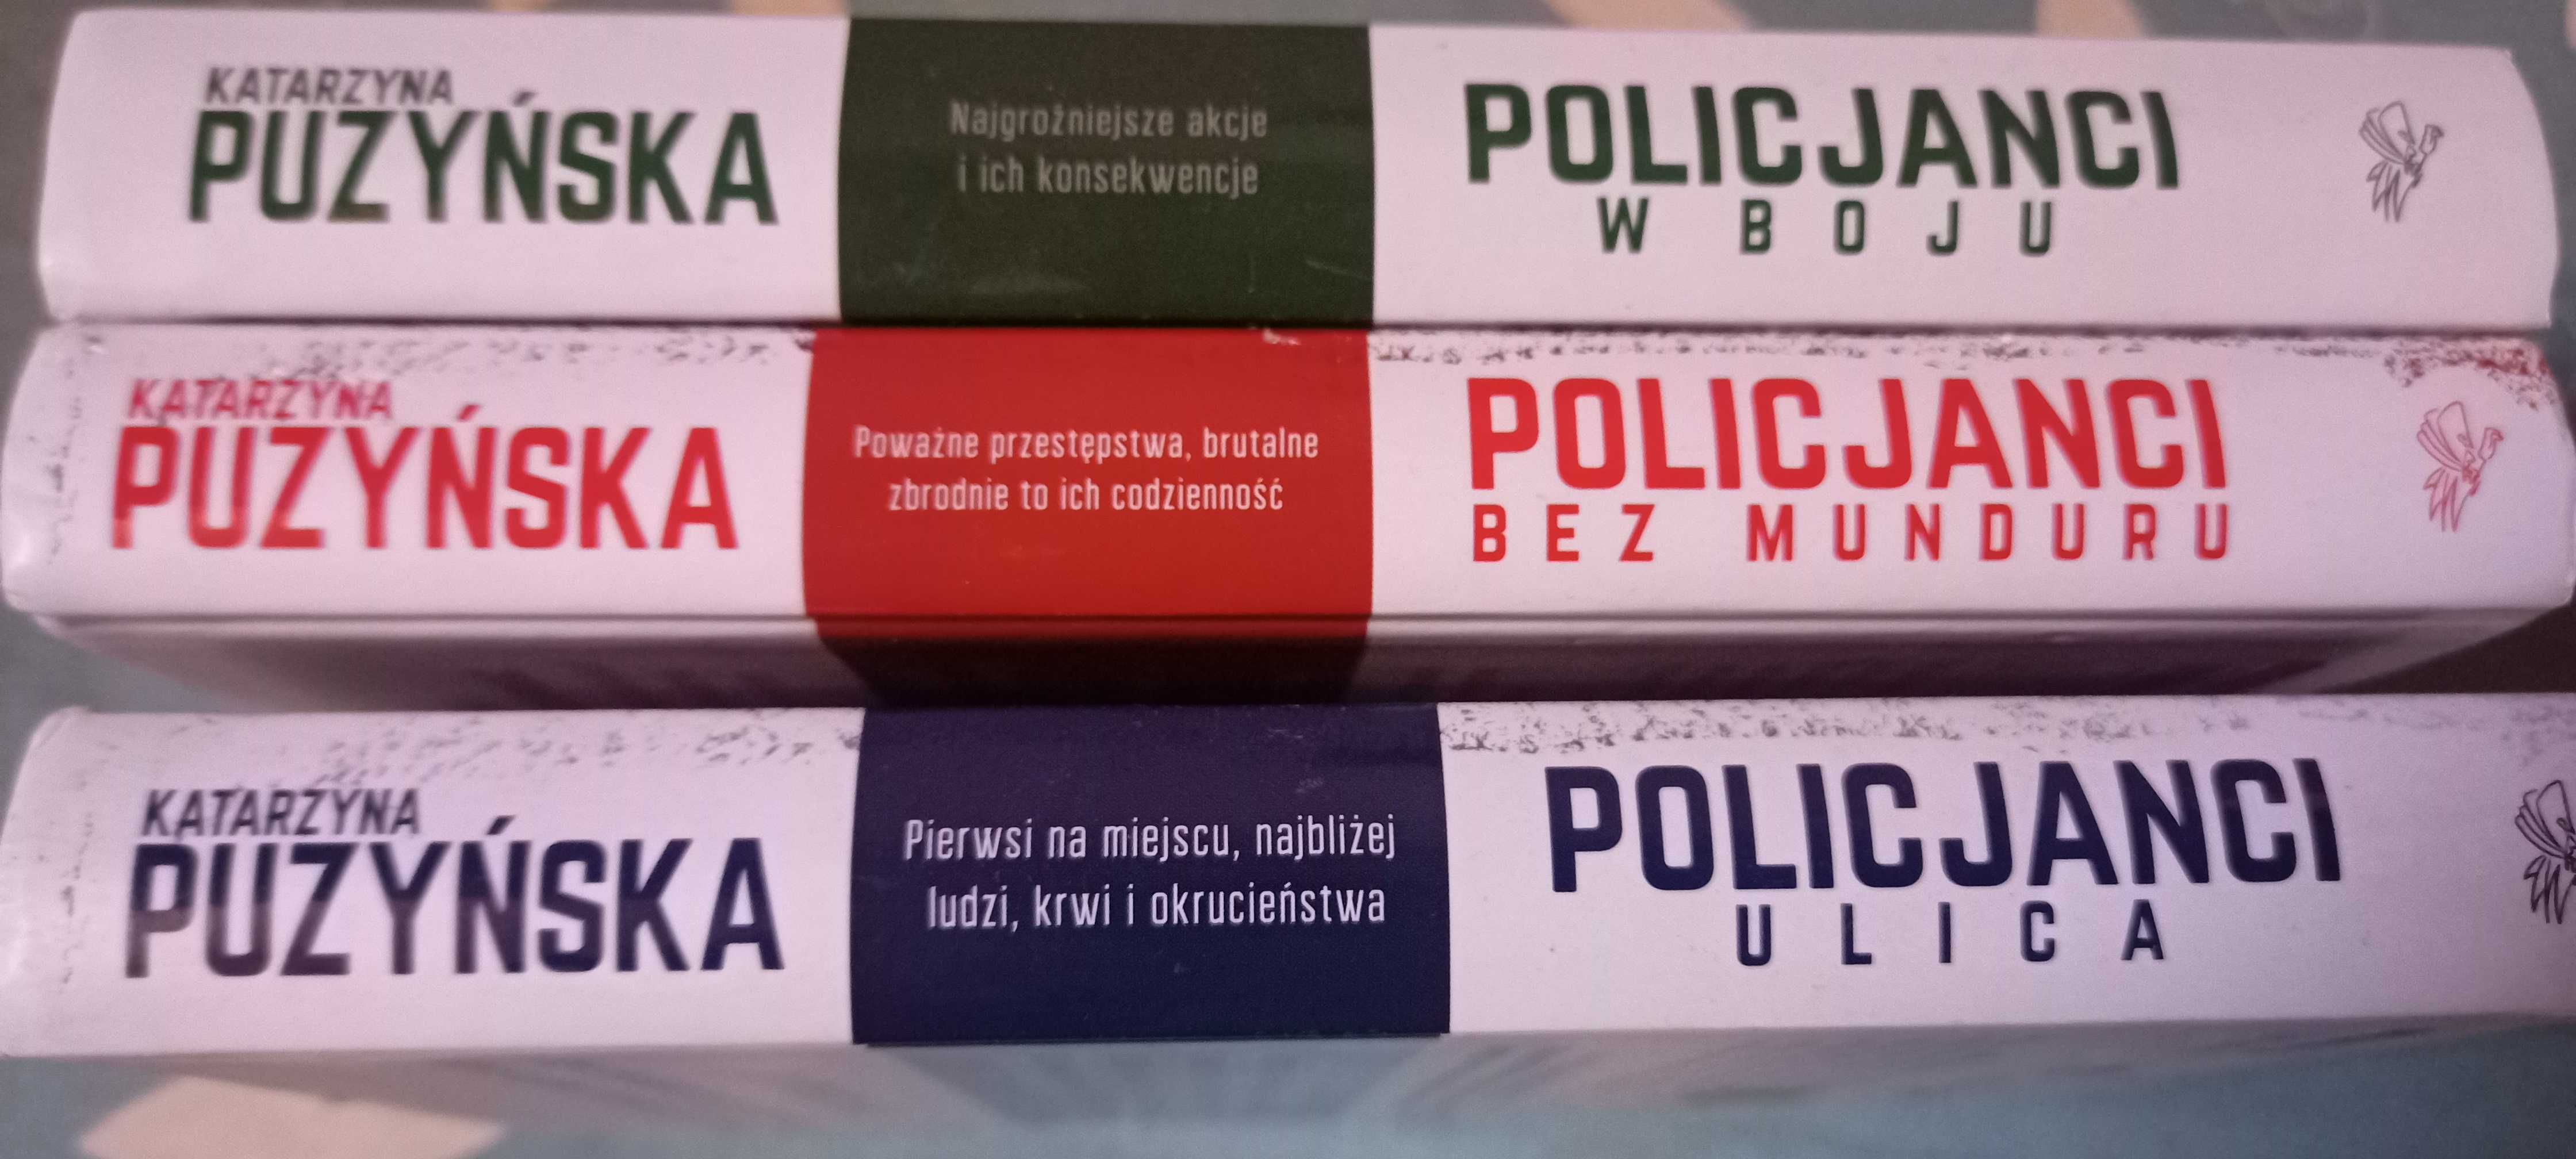 Katarzyna Puzyńska-Policjanci